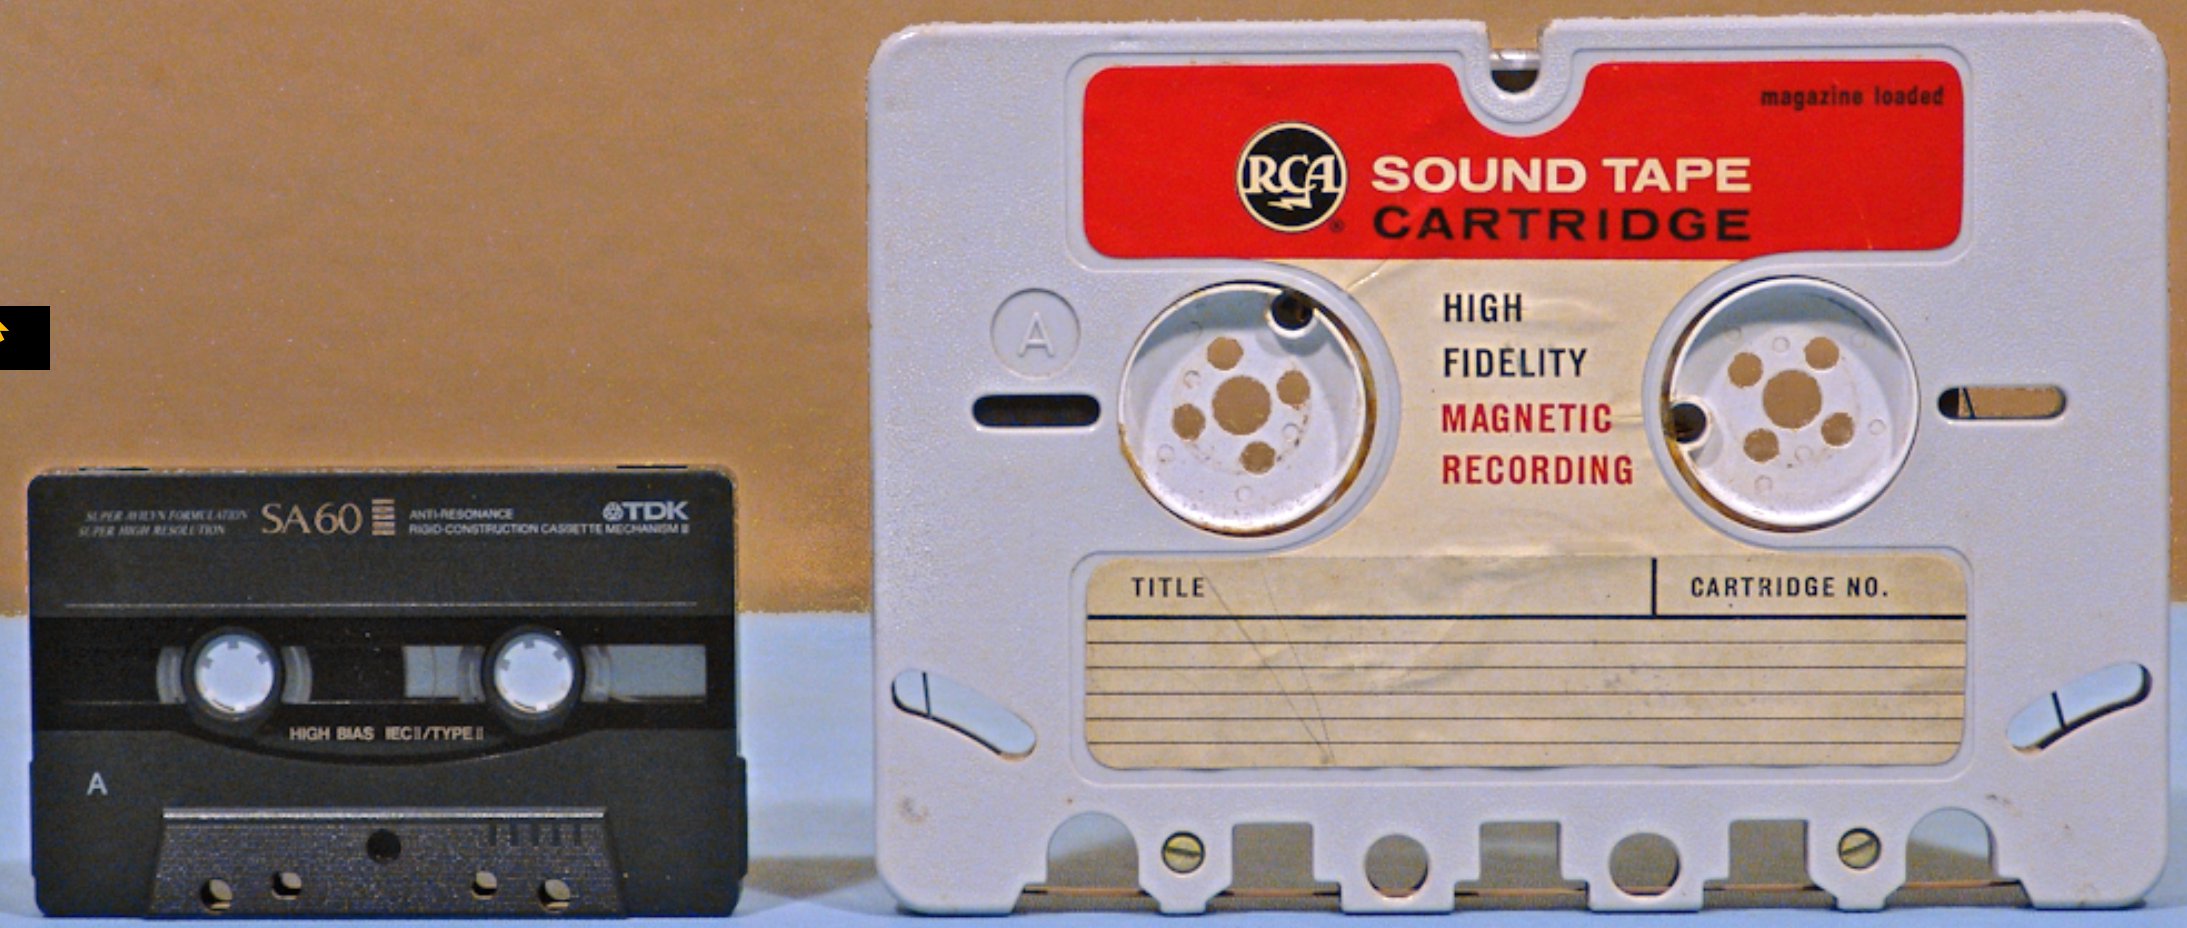 cassette_tape.jpg